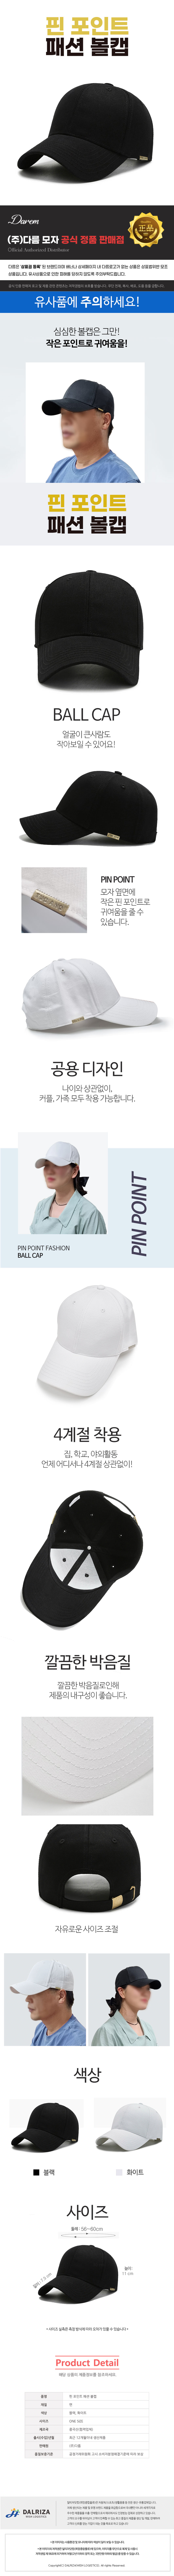 pinpoint_fashion_ball_cap_detail.jpg